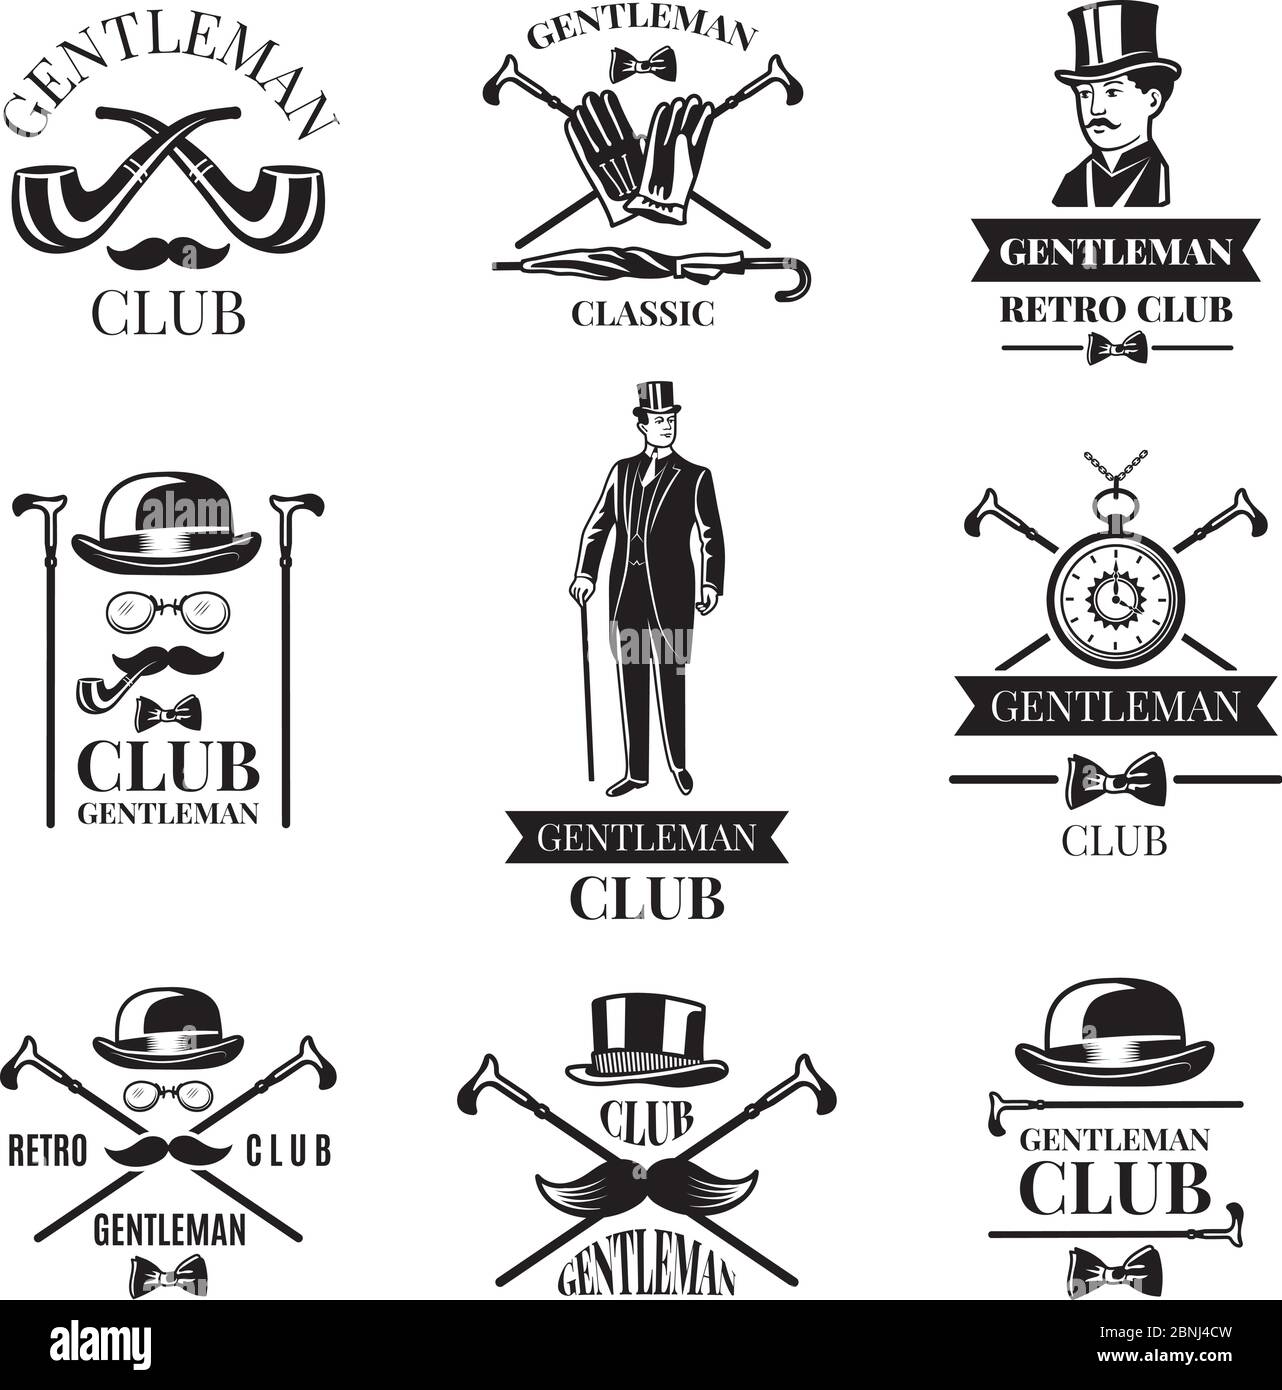 Gentleman club. Vector badges set Stock Vector